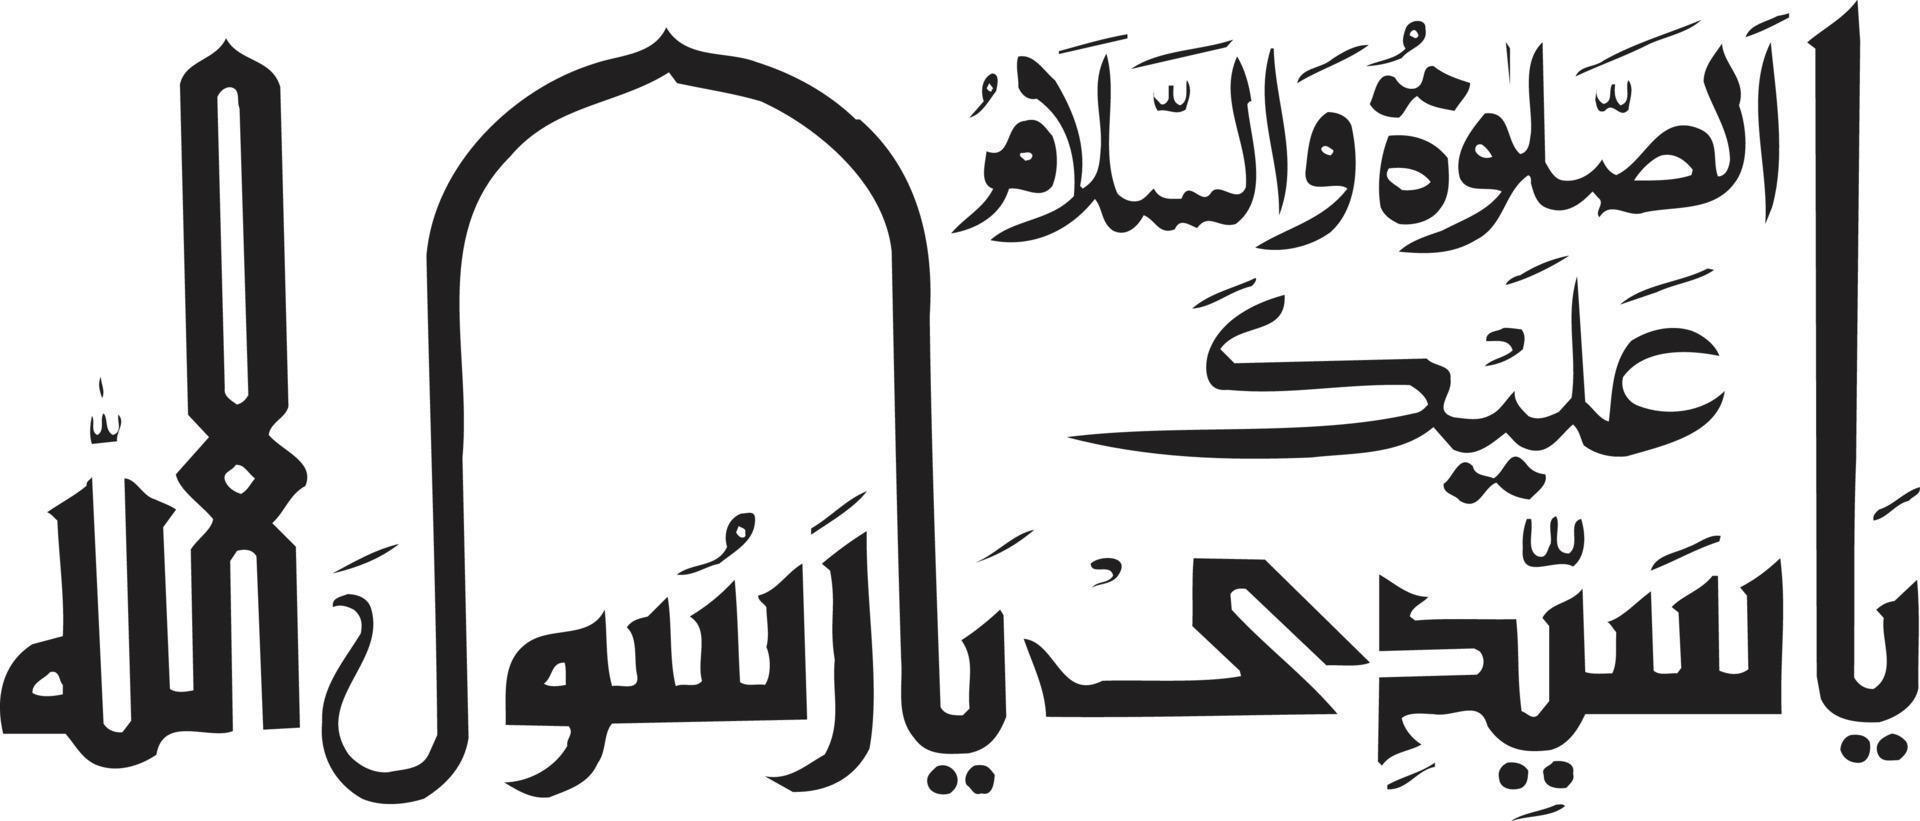 vector libre de caligrafía islámica slaam